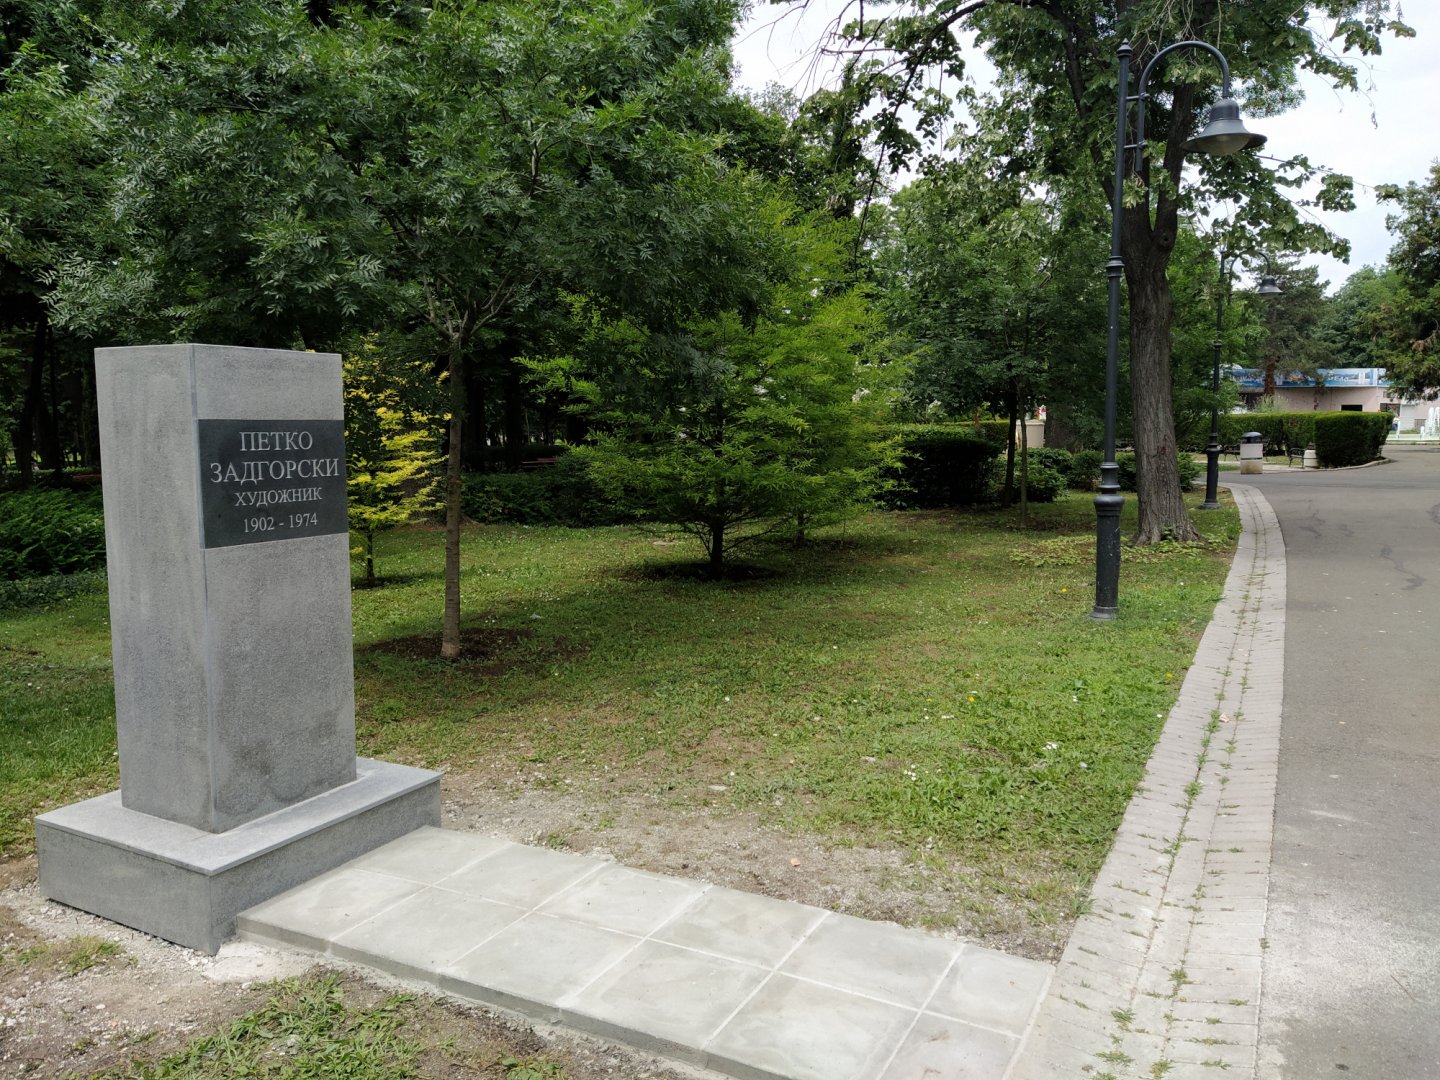 Постаментът е монтиран. Предстои да бъда поставен бюстът на Петко Задгорски и паметника да бъде открит на 19-ти юли